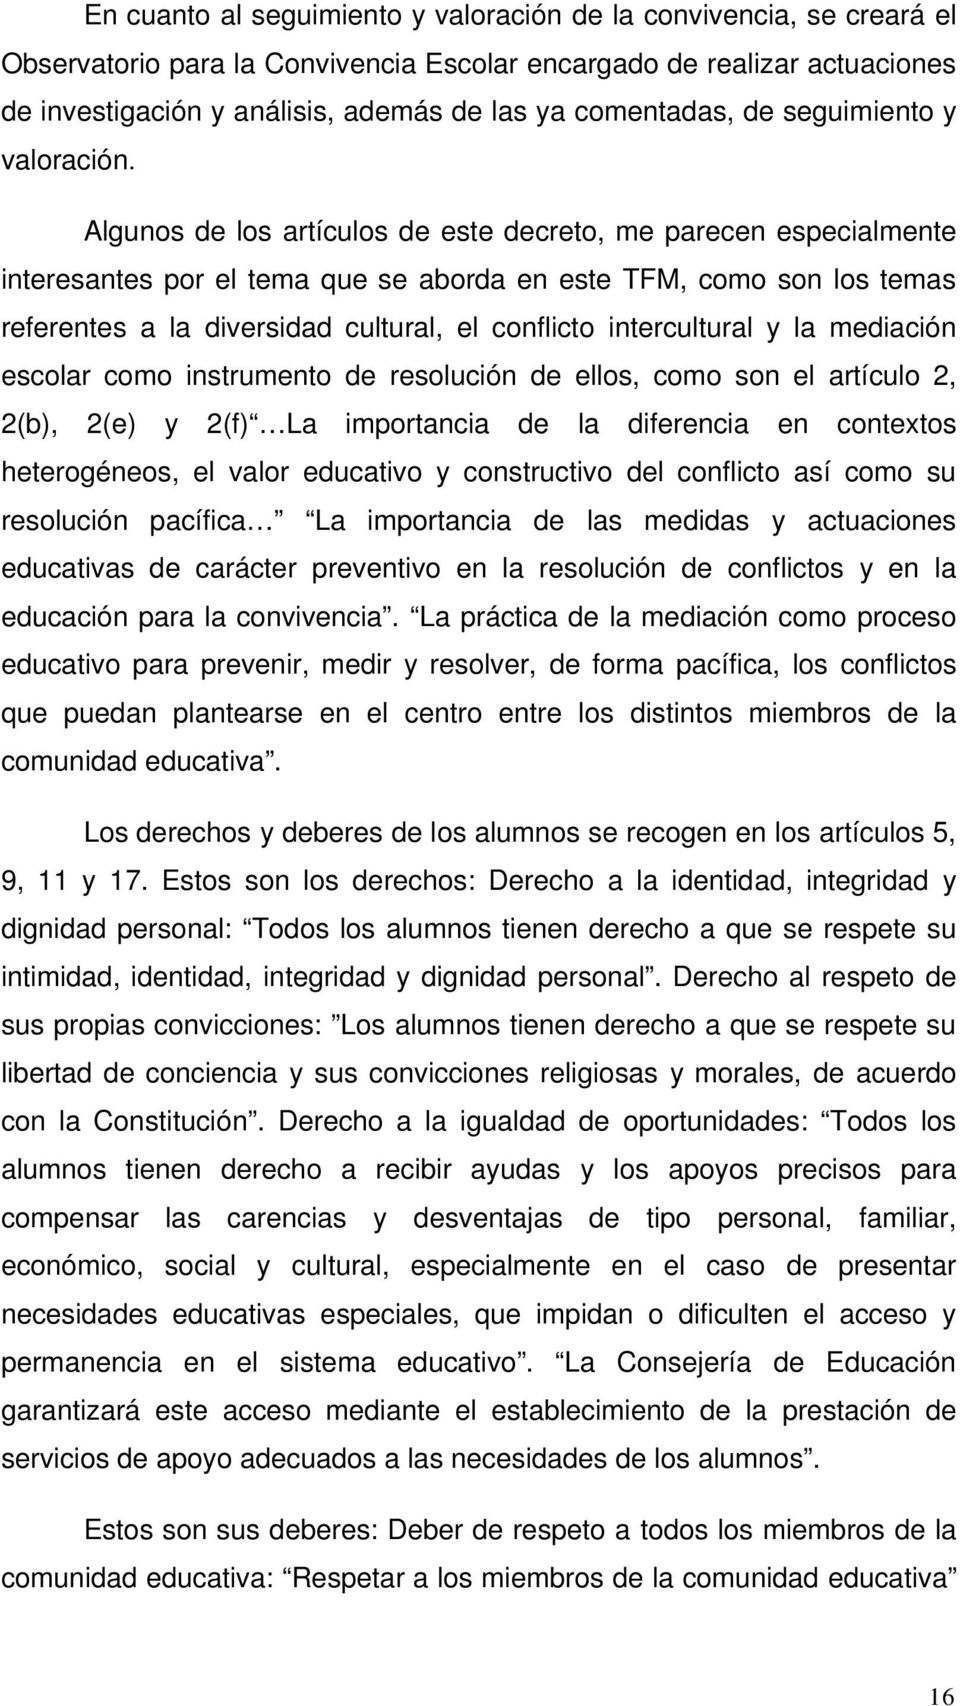 Algunos de los artículos de este decreto, me parecen especialmente interesantes por el tema que se aborda en este TFM, como son los temas referentes a la diversidad cultural, el conflicto